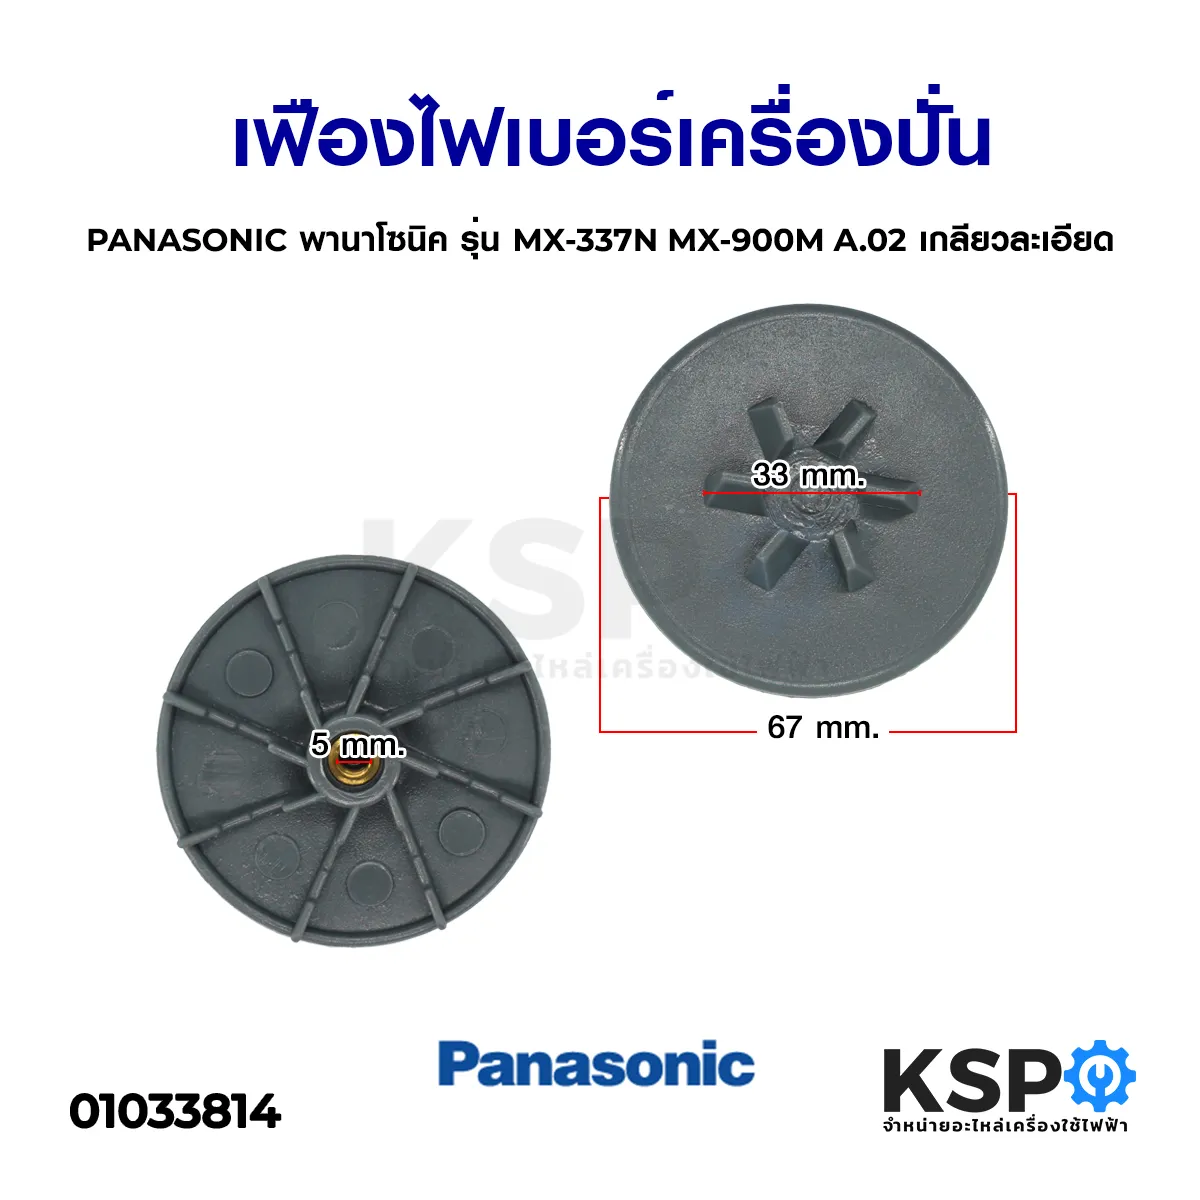 เฟืองไฟเบอร์ เครื่องปั่น  PANASONIC พานาโซนิค รุ่น MX-337N MX-900M A.02 เกลียวละเอียด อะไหล่เครื่องปั่น